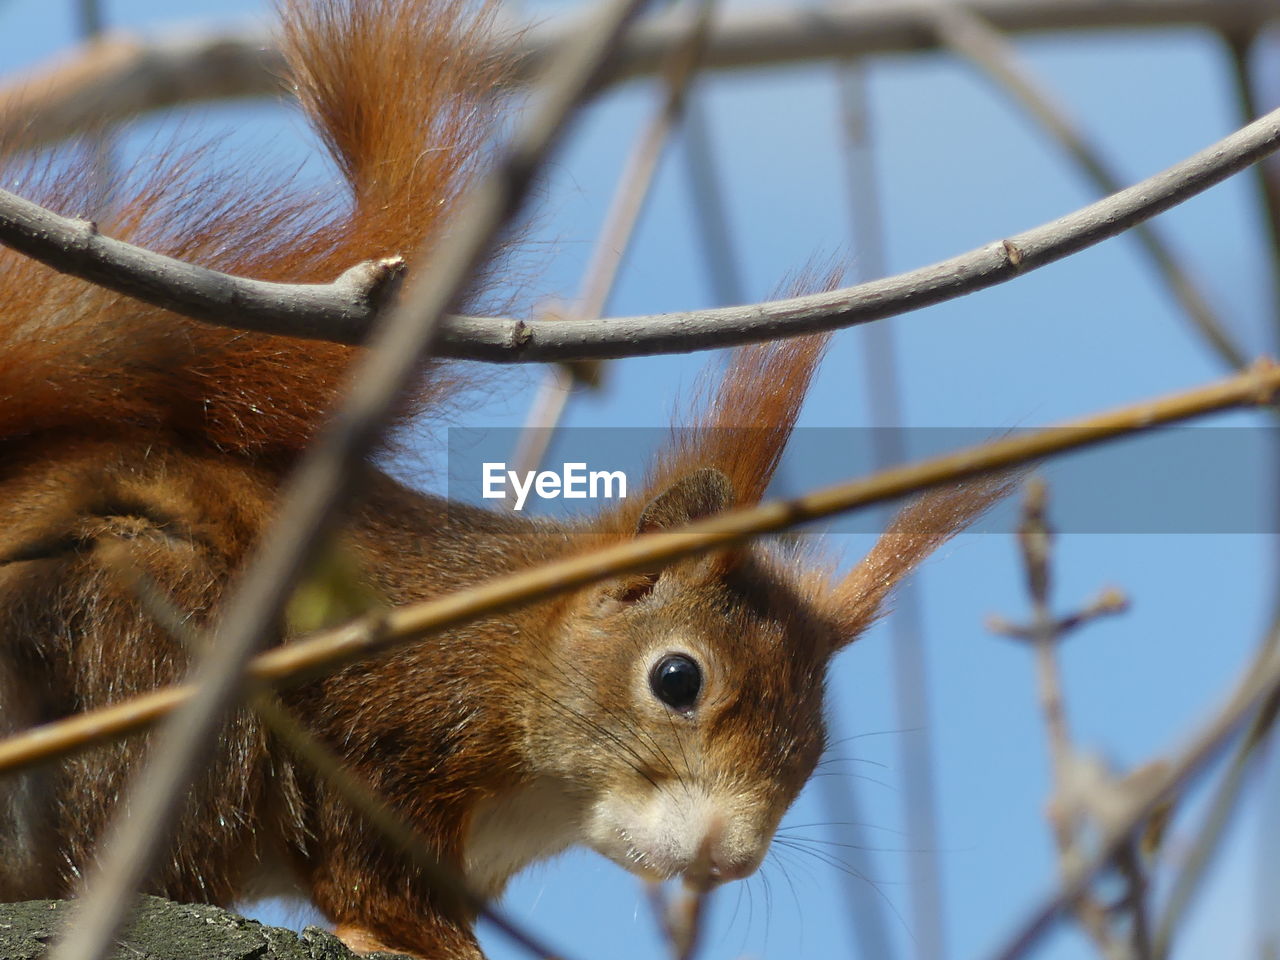 Squirrel close-up